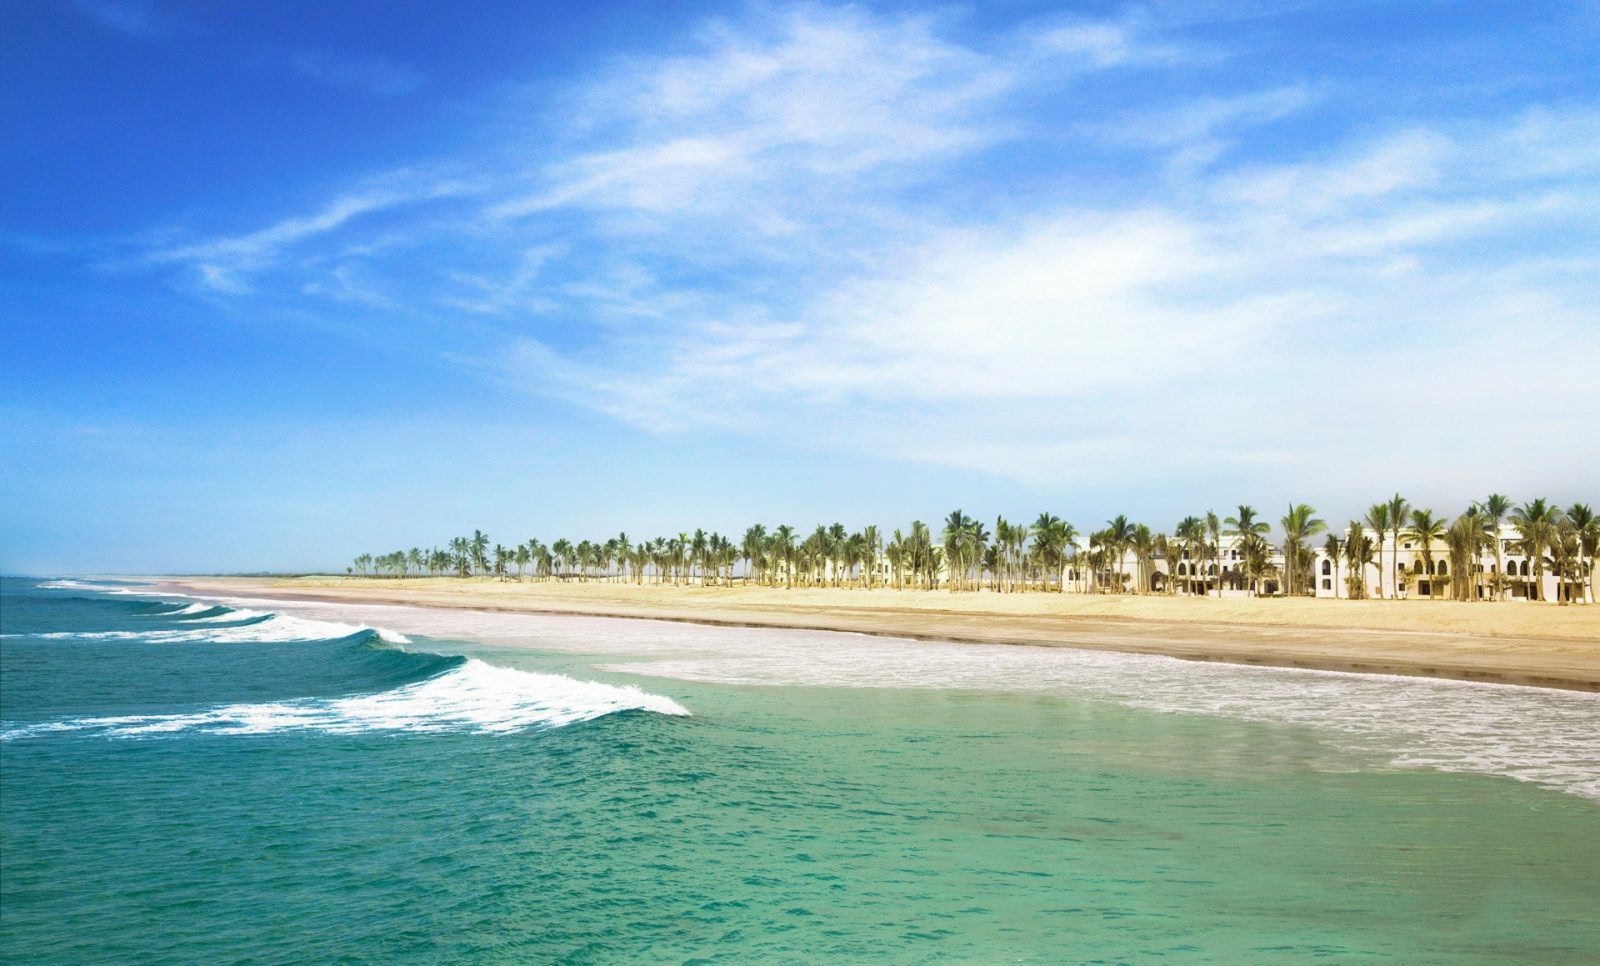 Plaża w Omanie w regionie Salalah przy hotelu Rotana